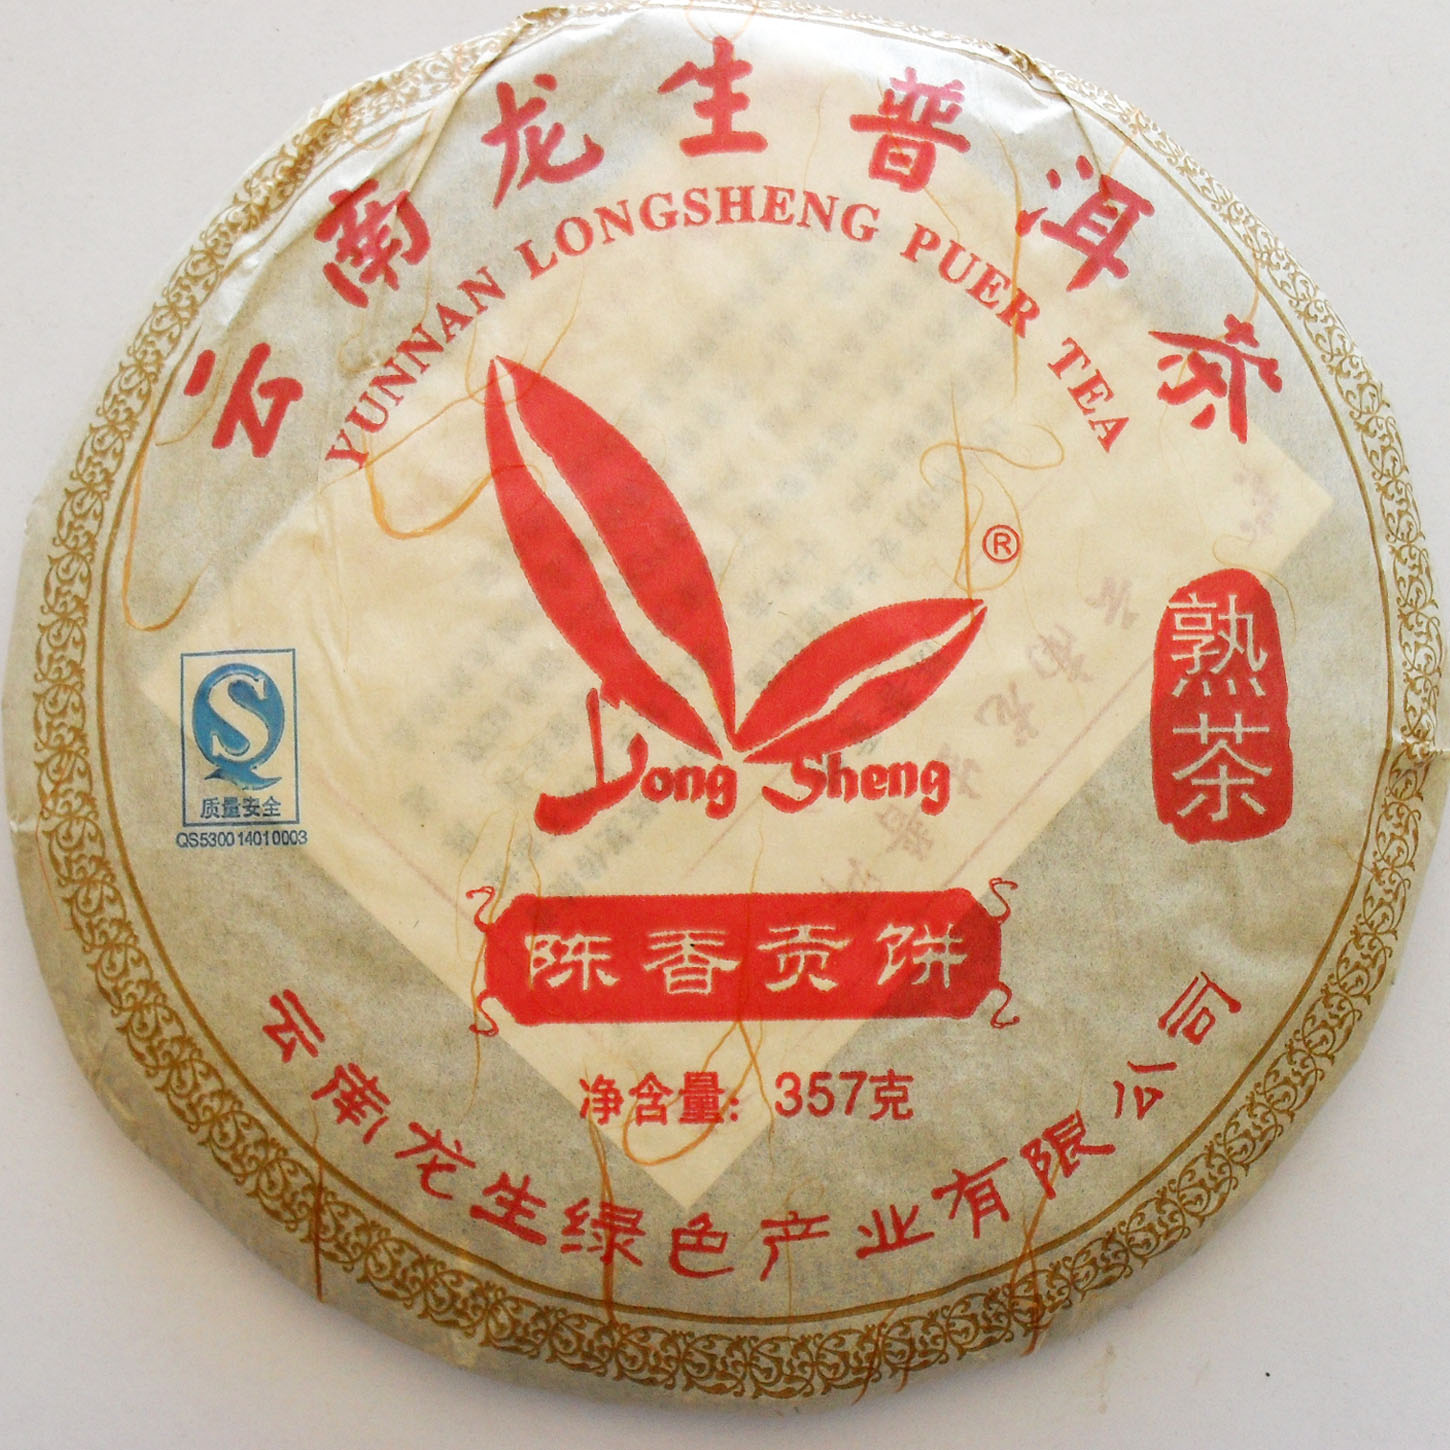 普洱茶特价 龙生普洱茶 1997年陈香贡饼 熟茶 龙生公司开业之作